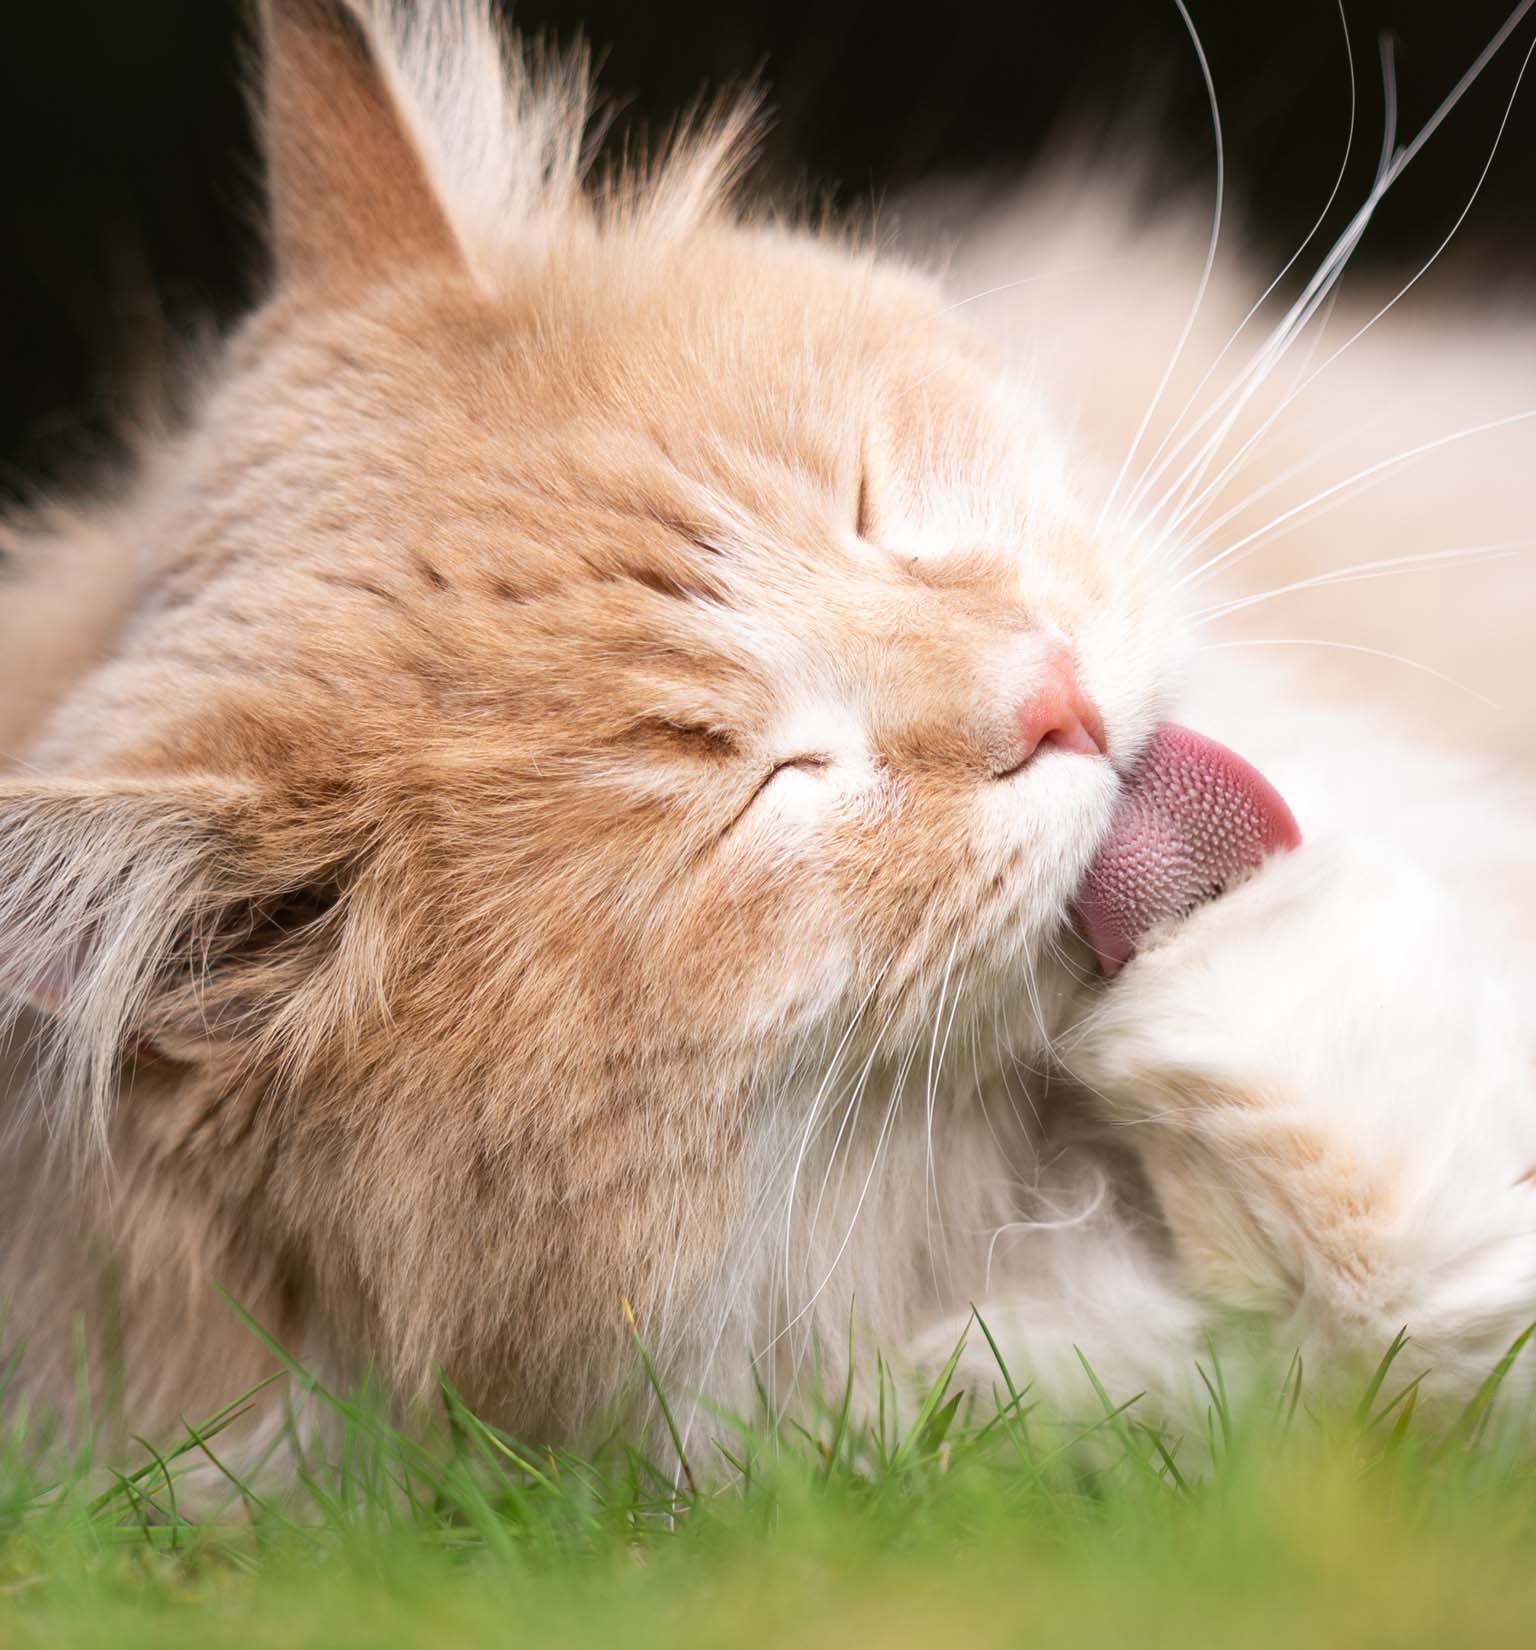 Porque é que os gatos vomitam bolas de pelo?